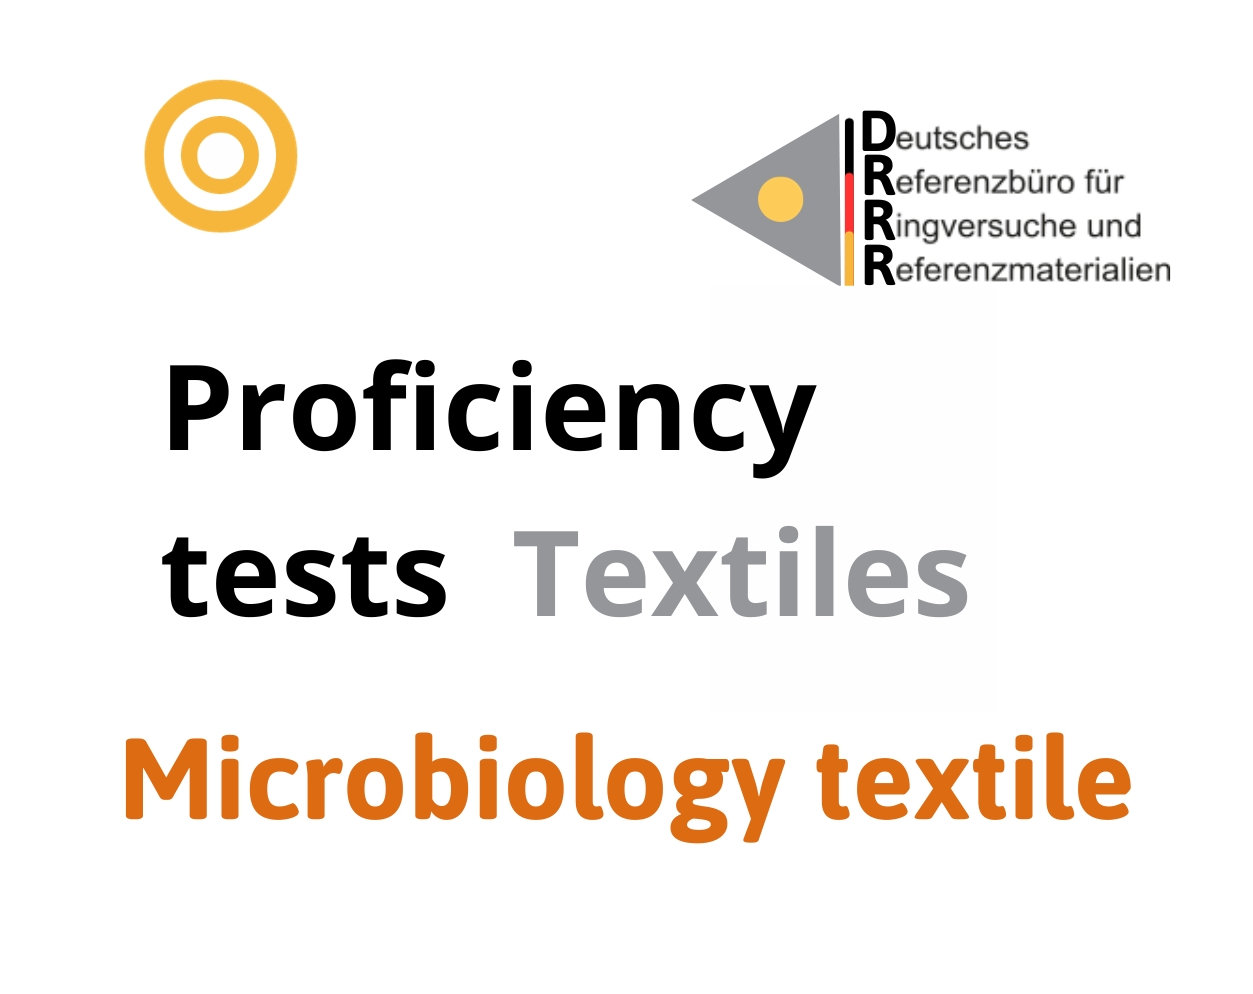 Thử nghiệm thành thạo (ISO 17043) vi sinh trên hàng dệt may (Microbiology textile), Hãng DRRR, Đức